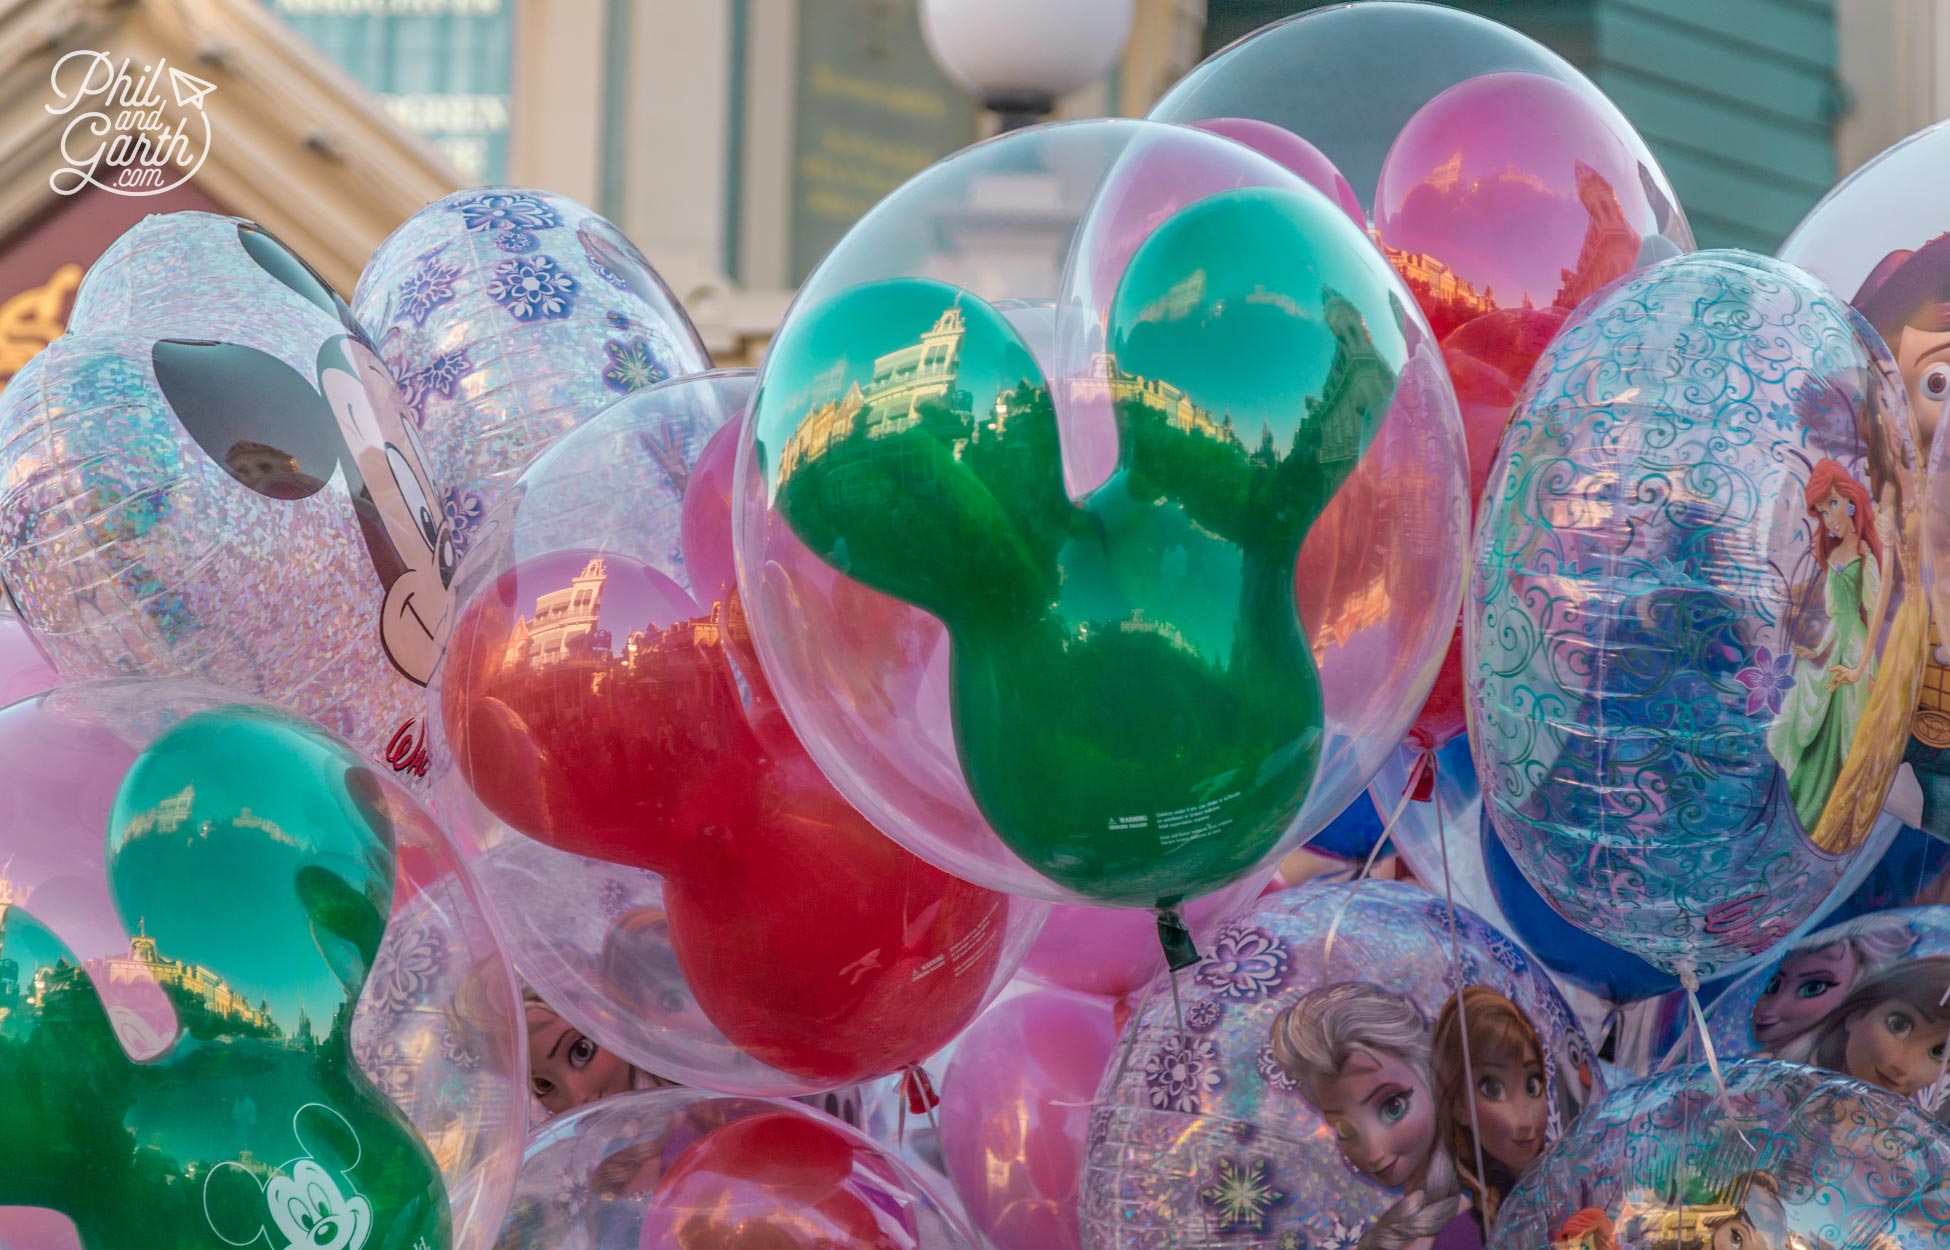 Mickey shaped balloons on Main Street USA